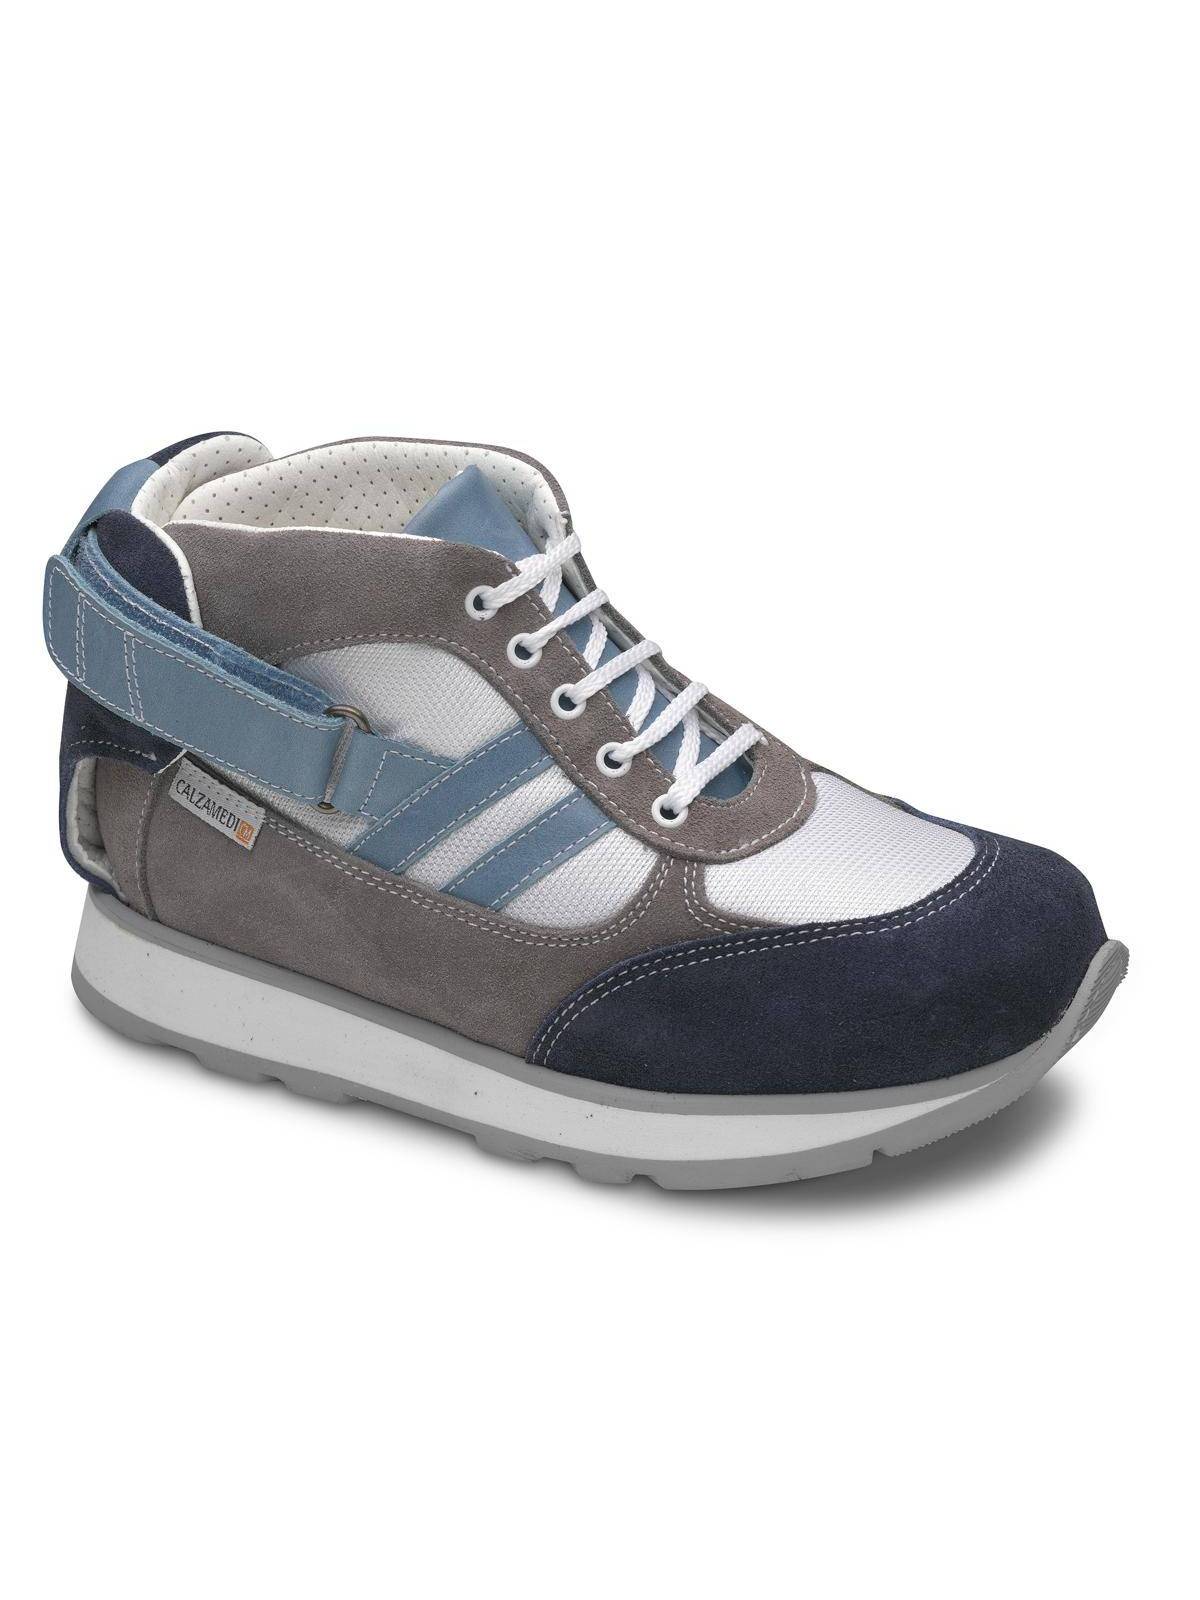 Zapato Calzamedi 4140 Gris/Azul